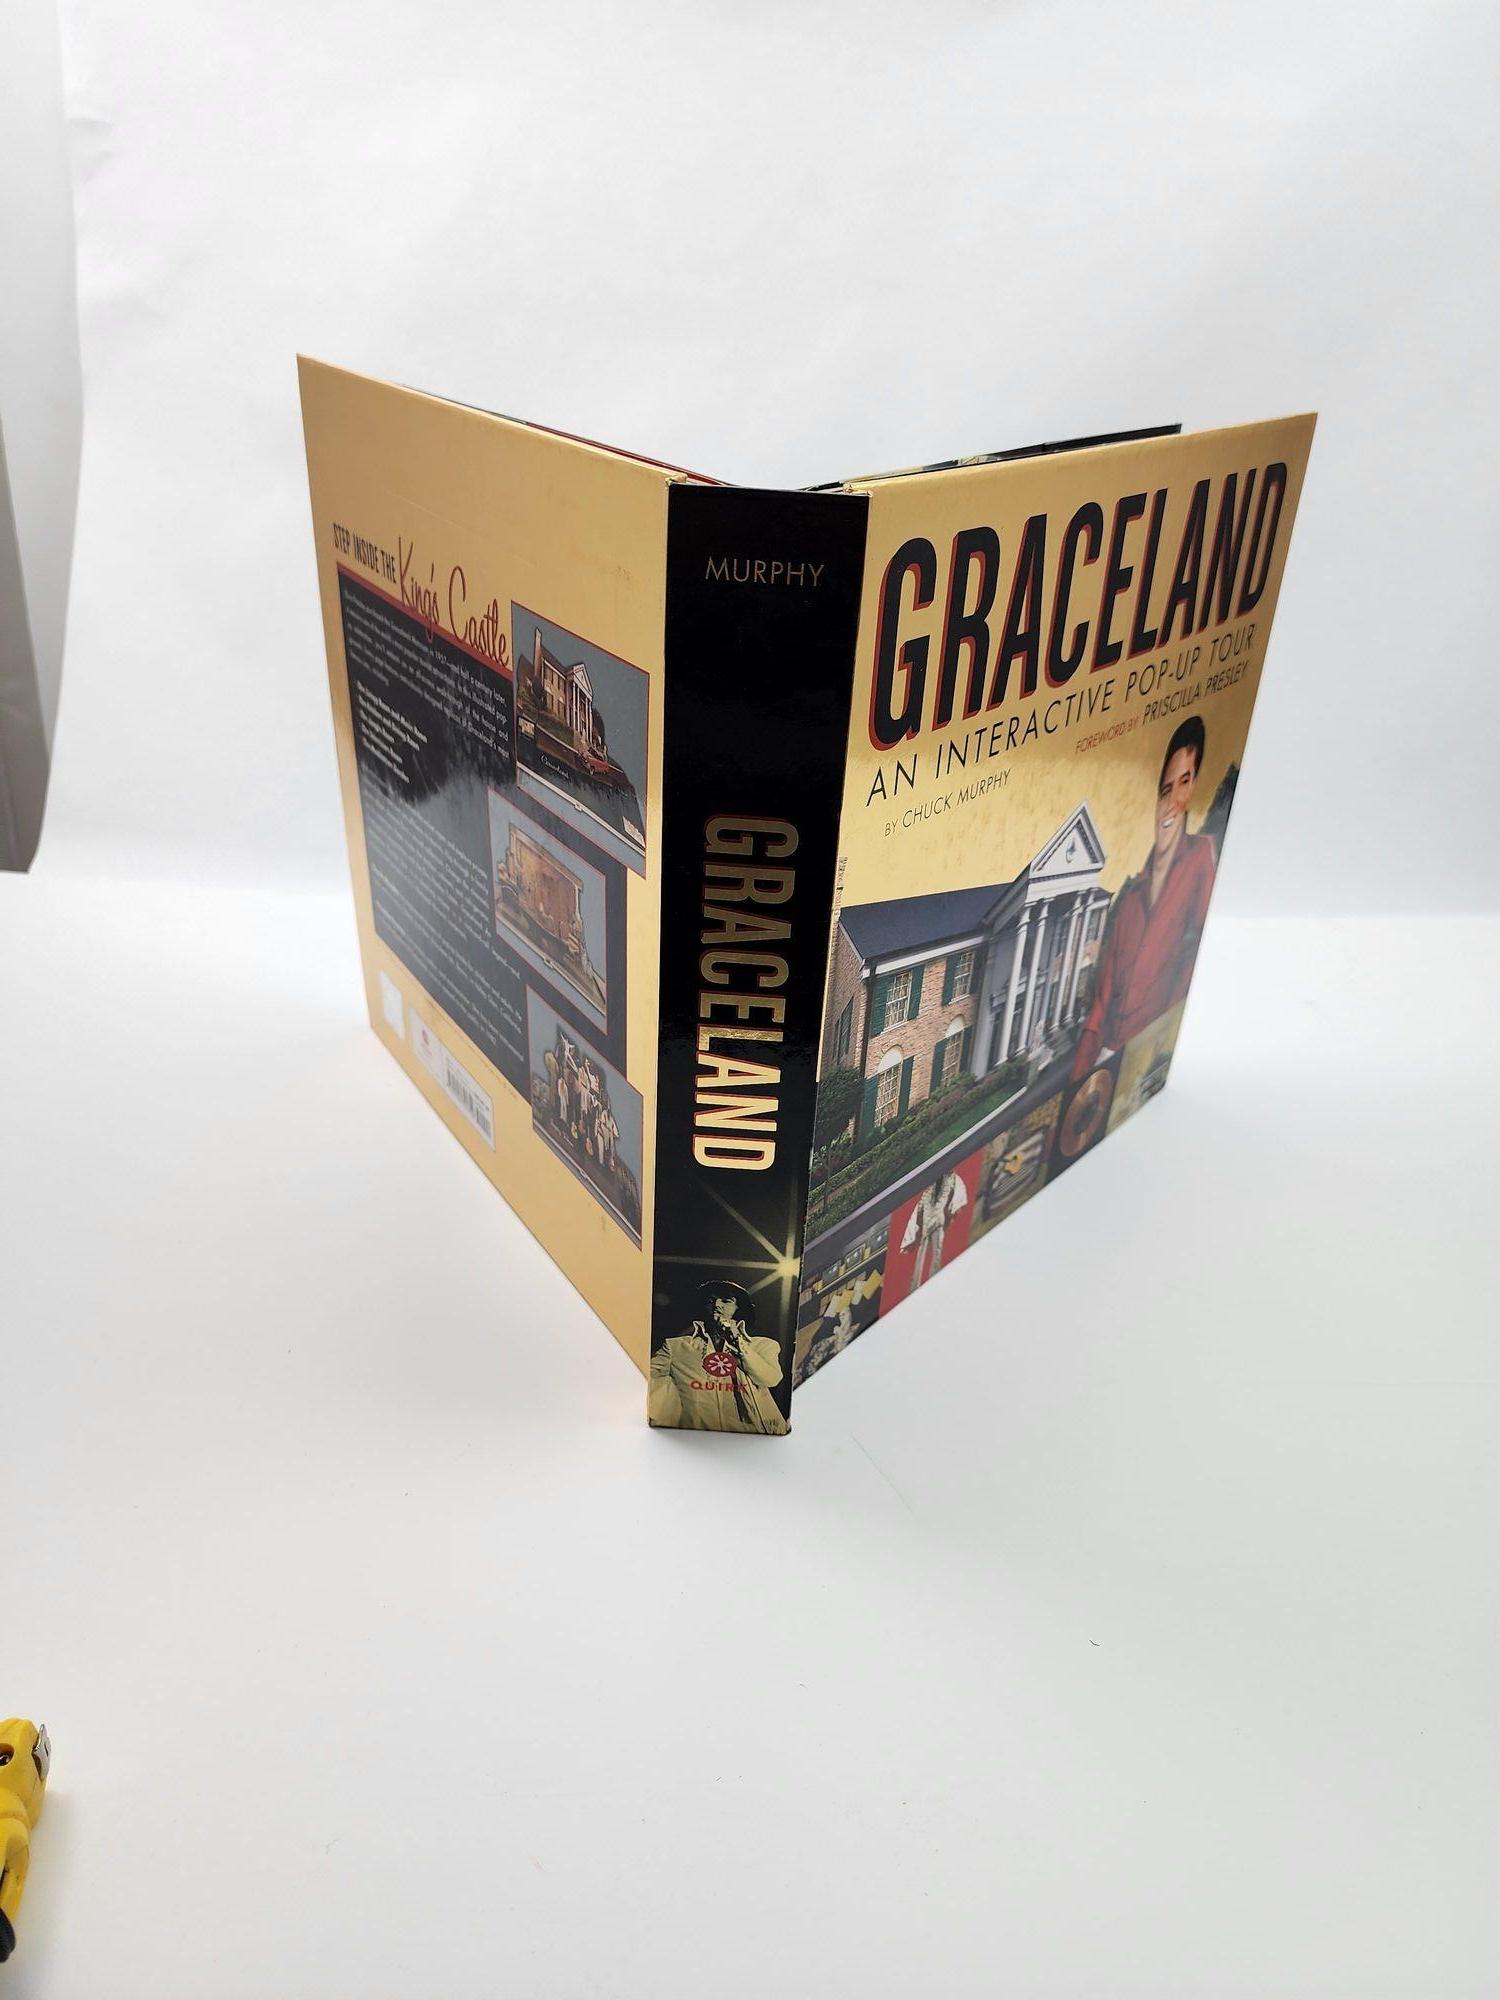 Graceland : An Interactive Pop-Up Tour par Chuck Murphy (2006-10-26) - Préface de Priscilla Presley.Livre interactif à couverture rigide.
Plus de 600 000 personnes visitent Graceland chaque année, ce qui en fait l'une des destinations touristiques